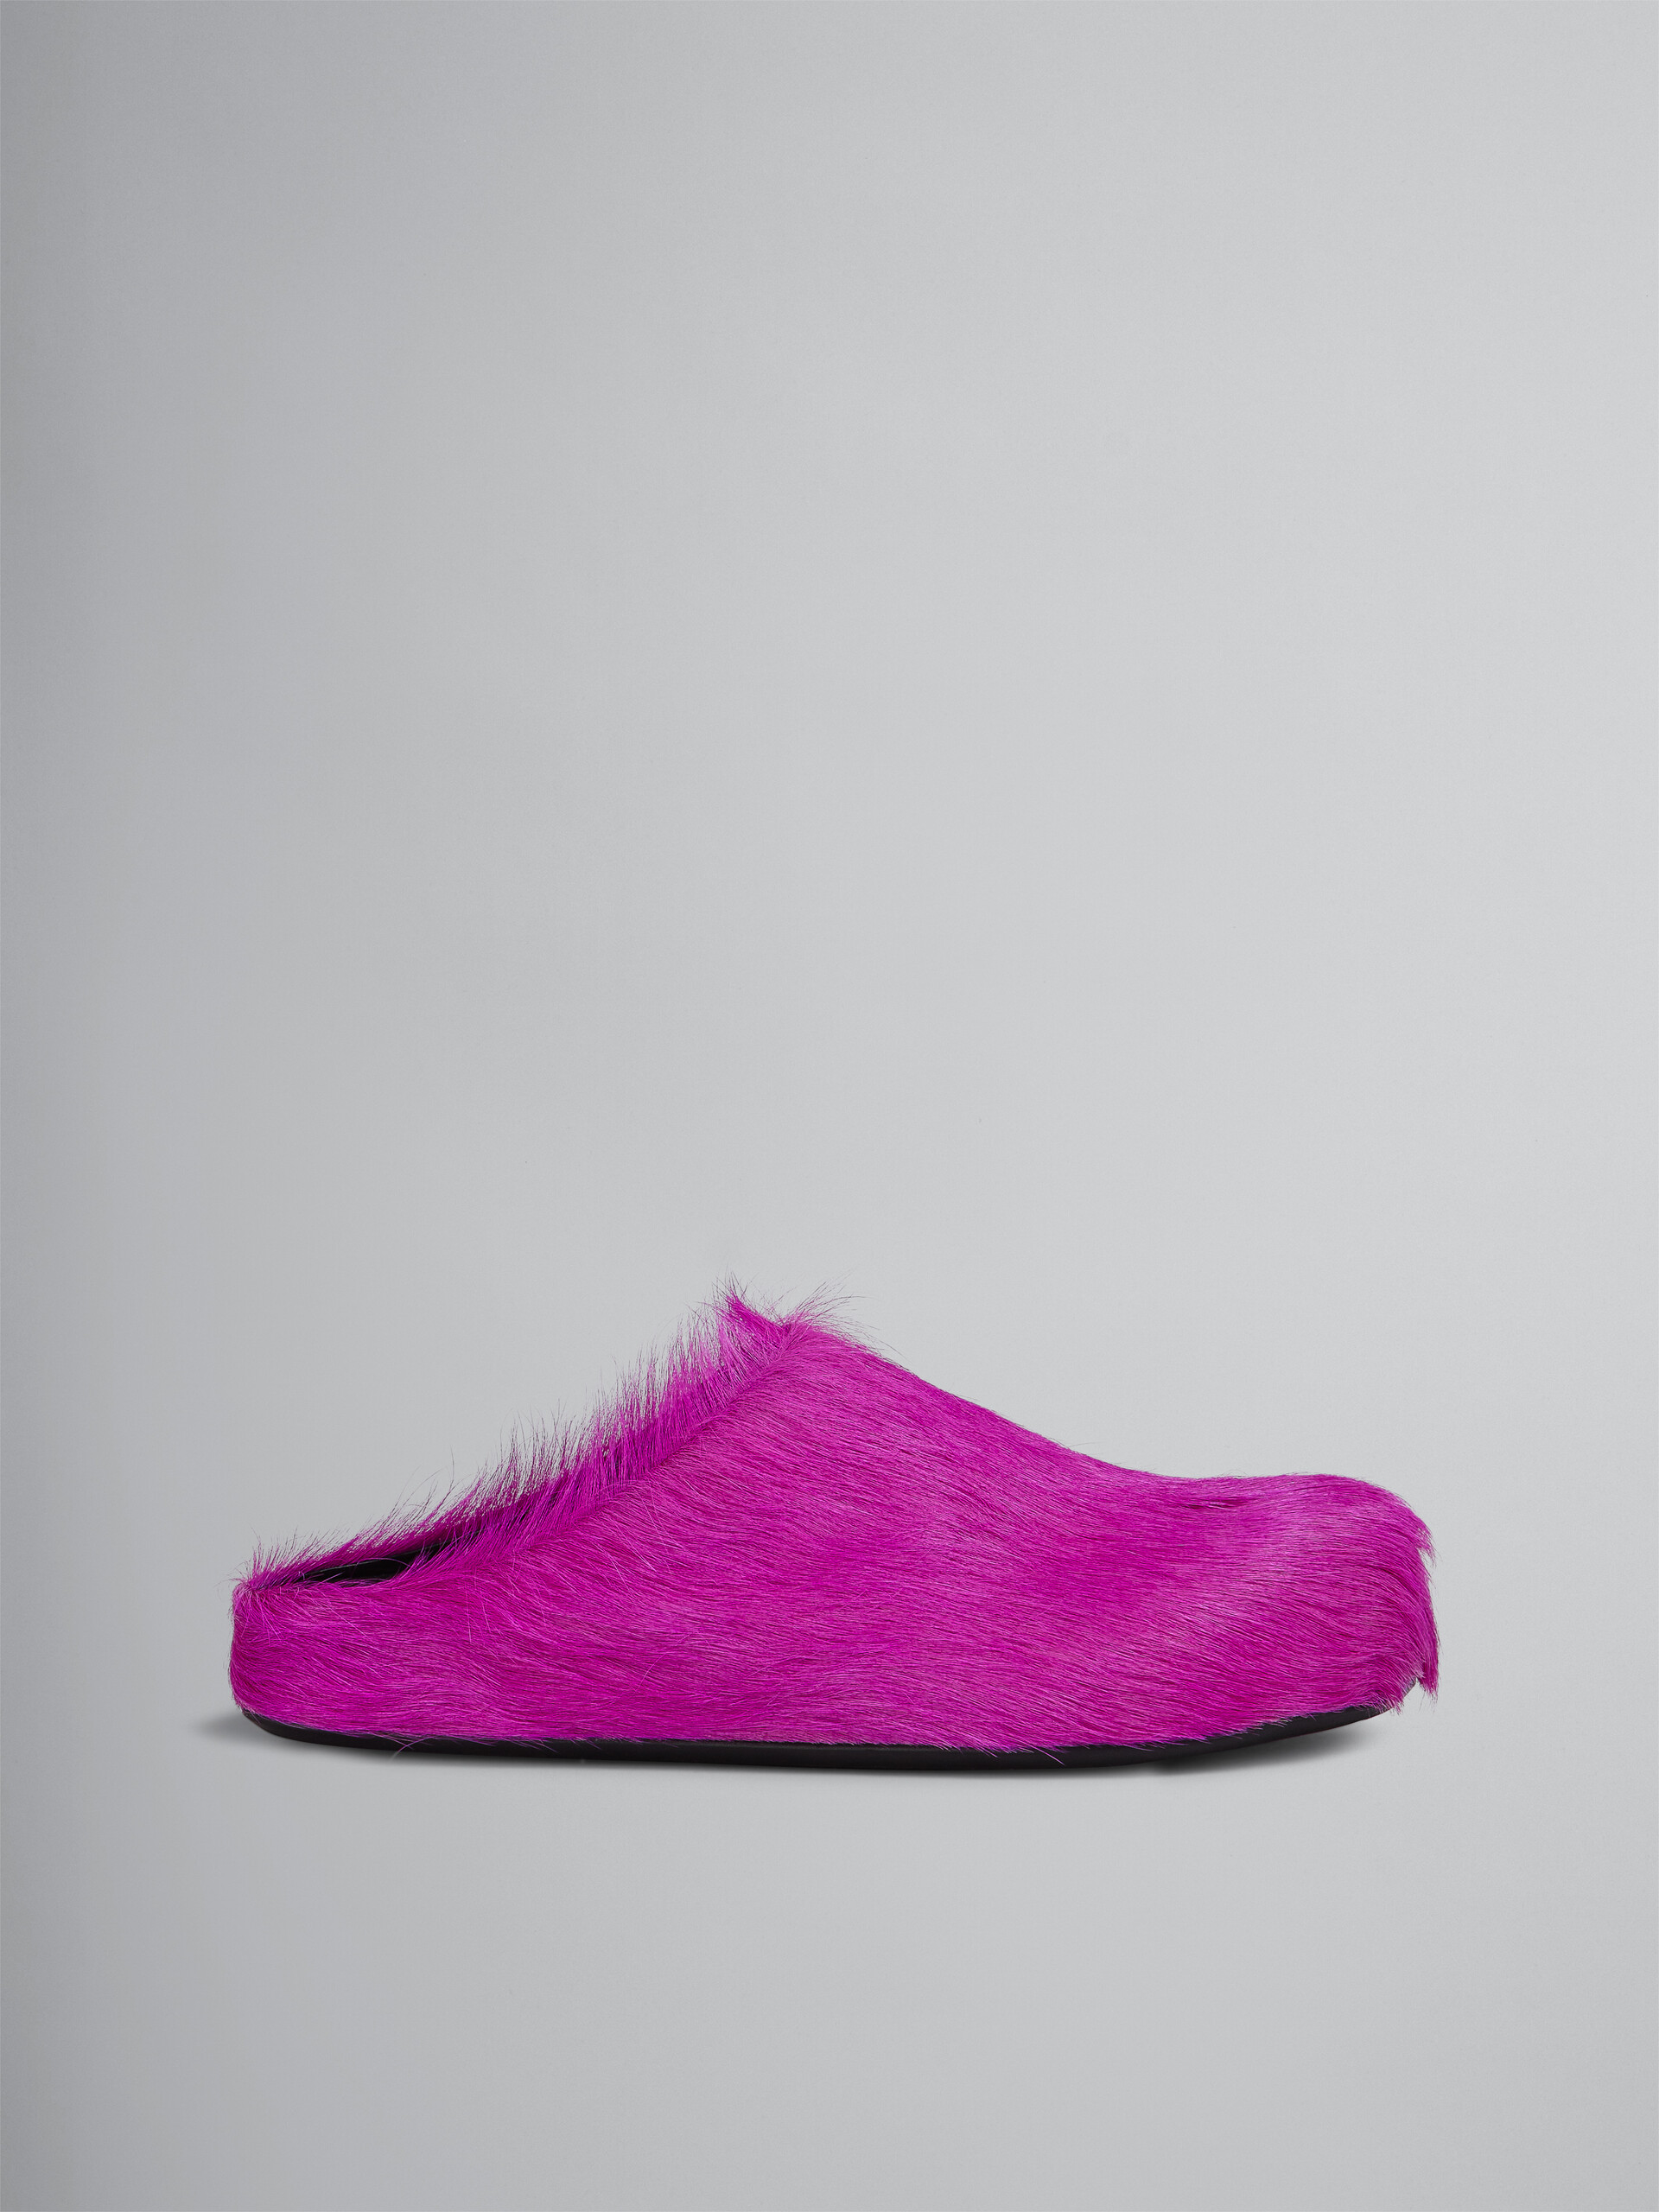 Pinkfarbene Fußbett-Sabots aus Kalbsfell - Holzschuhe - Image 1